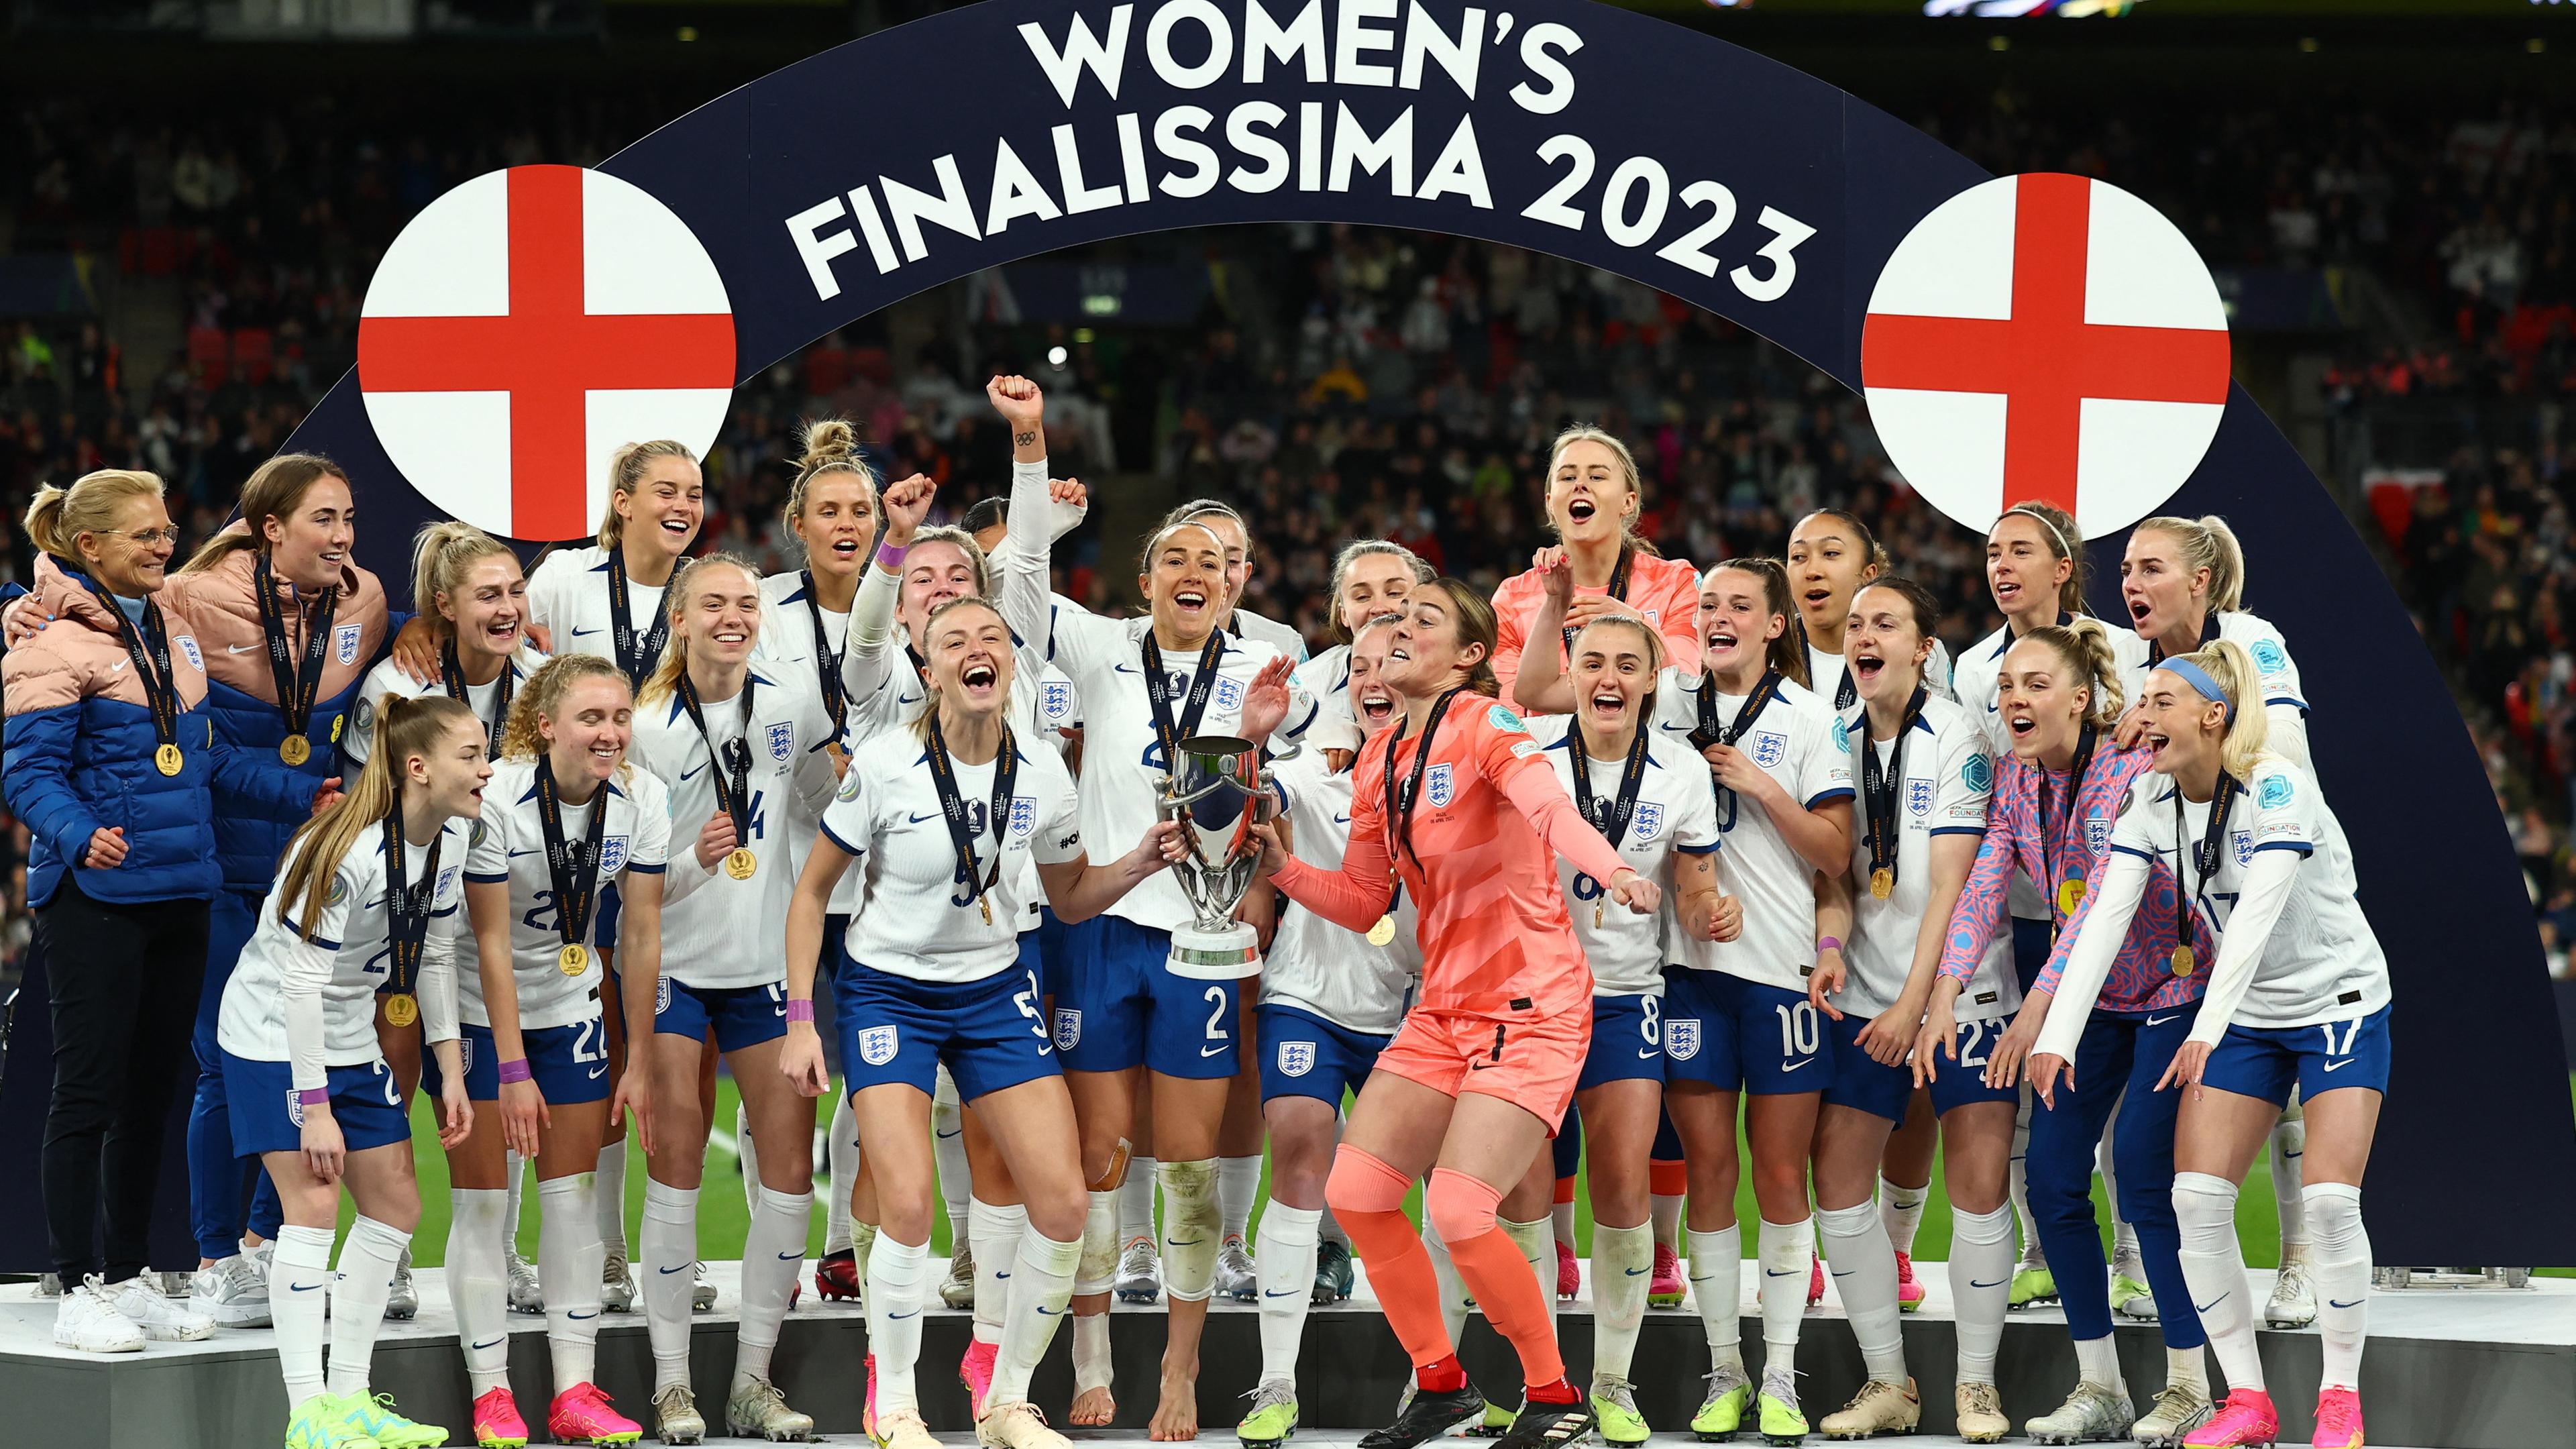 Siegerehrung bei der Finalissima für Englands Fußballfrauen